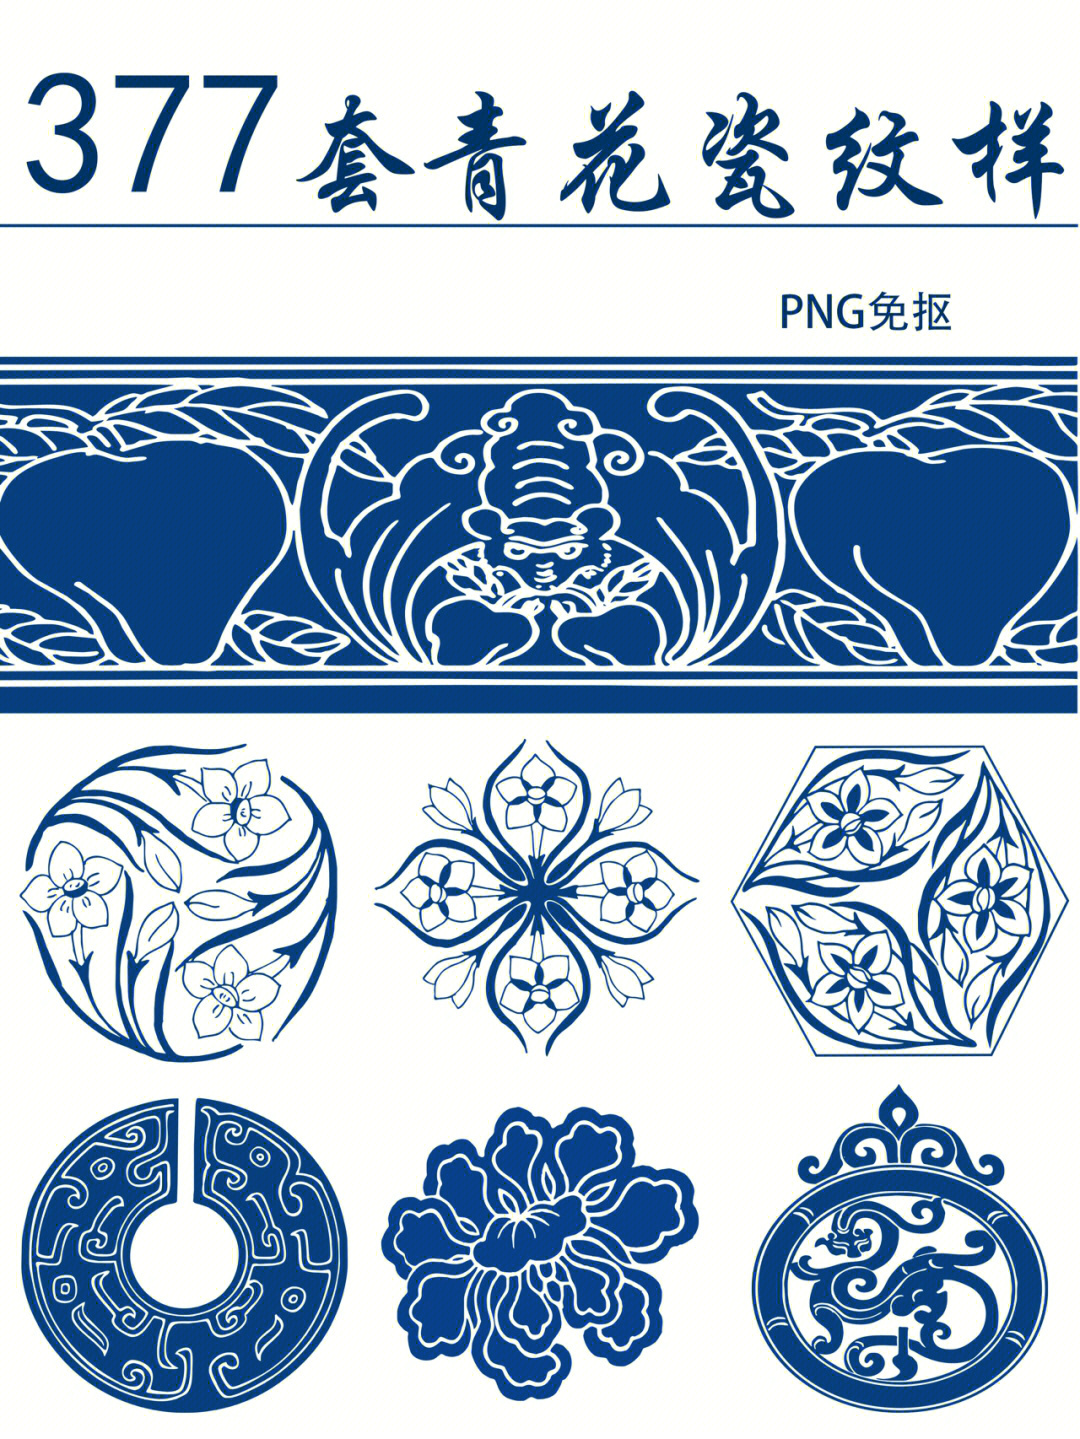 青花瓷传统纹样及寓意图片